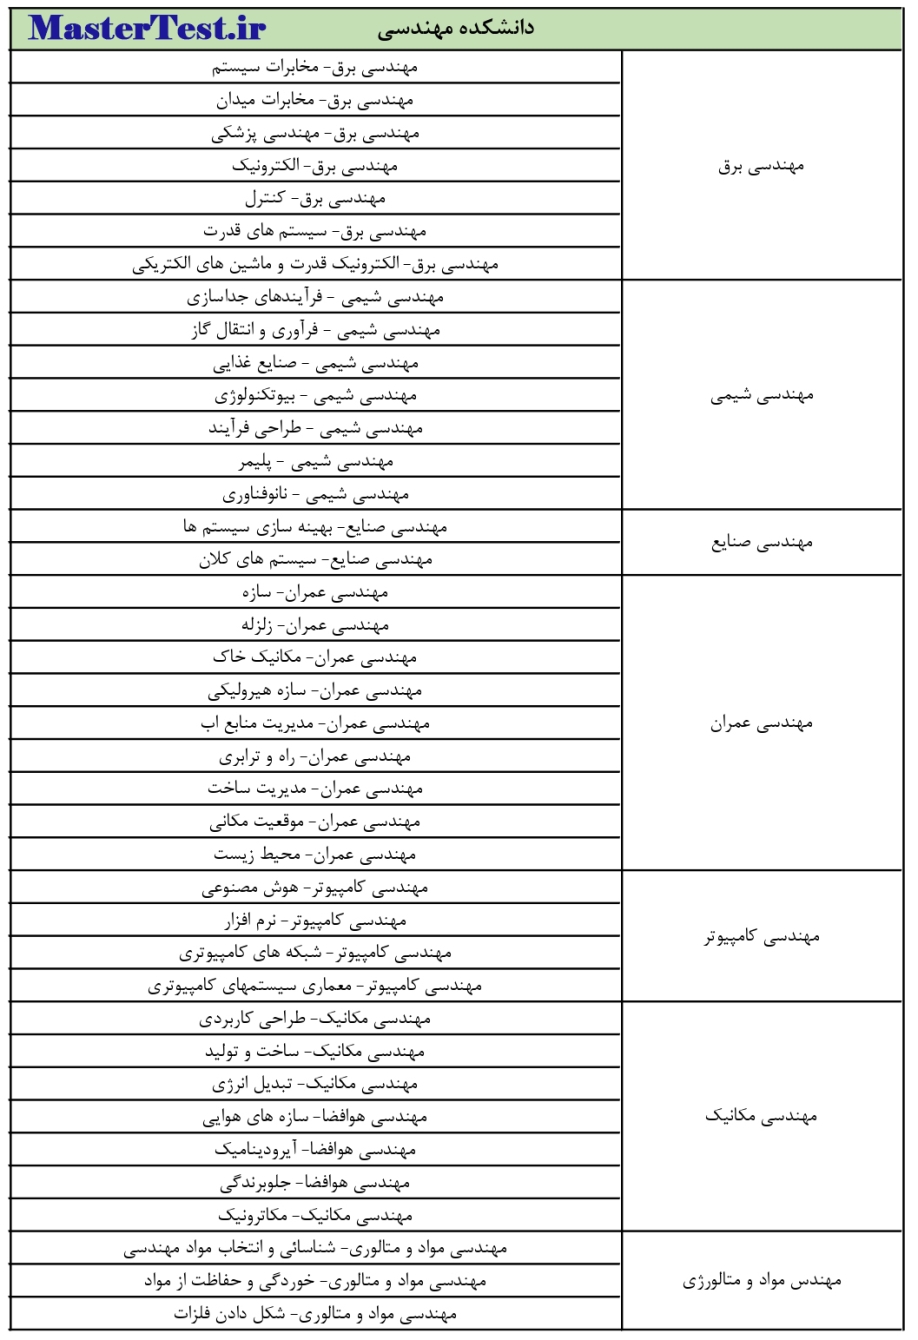 رشته های کارشناسی ارشد بدون آزمون دانشگاه فردوسی مشهد صفحه 5